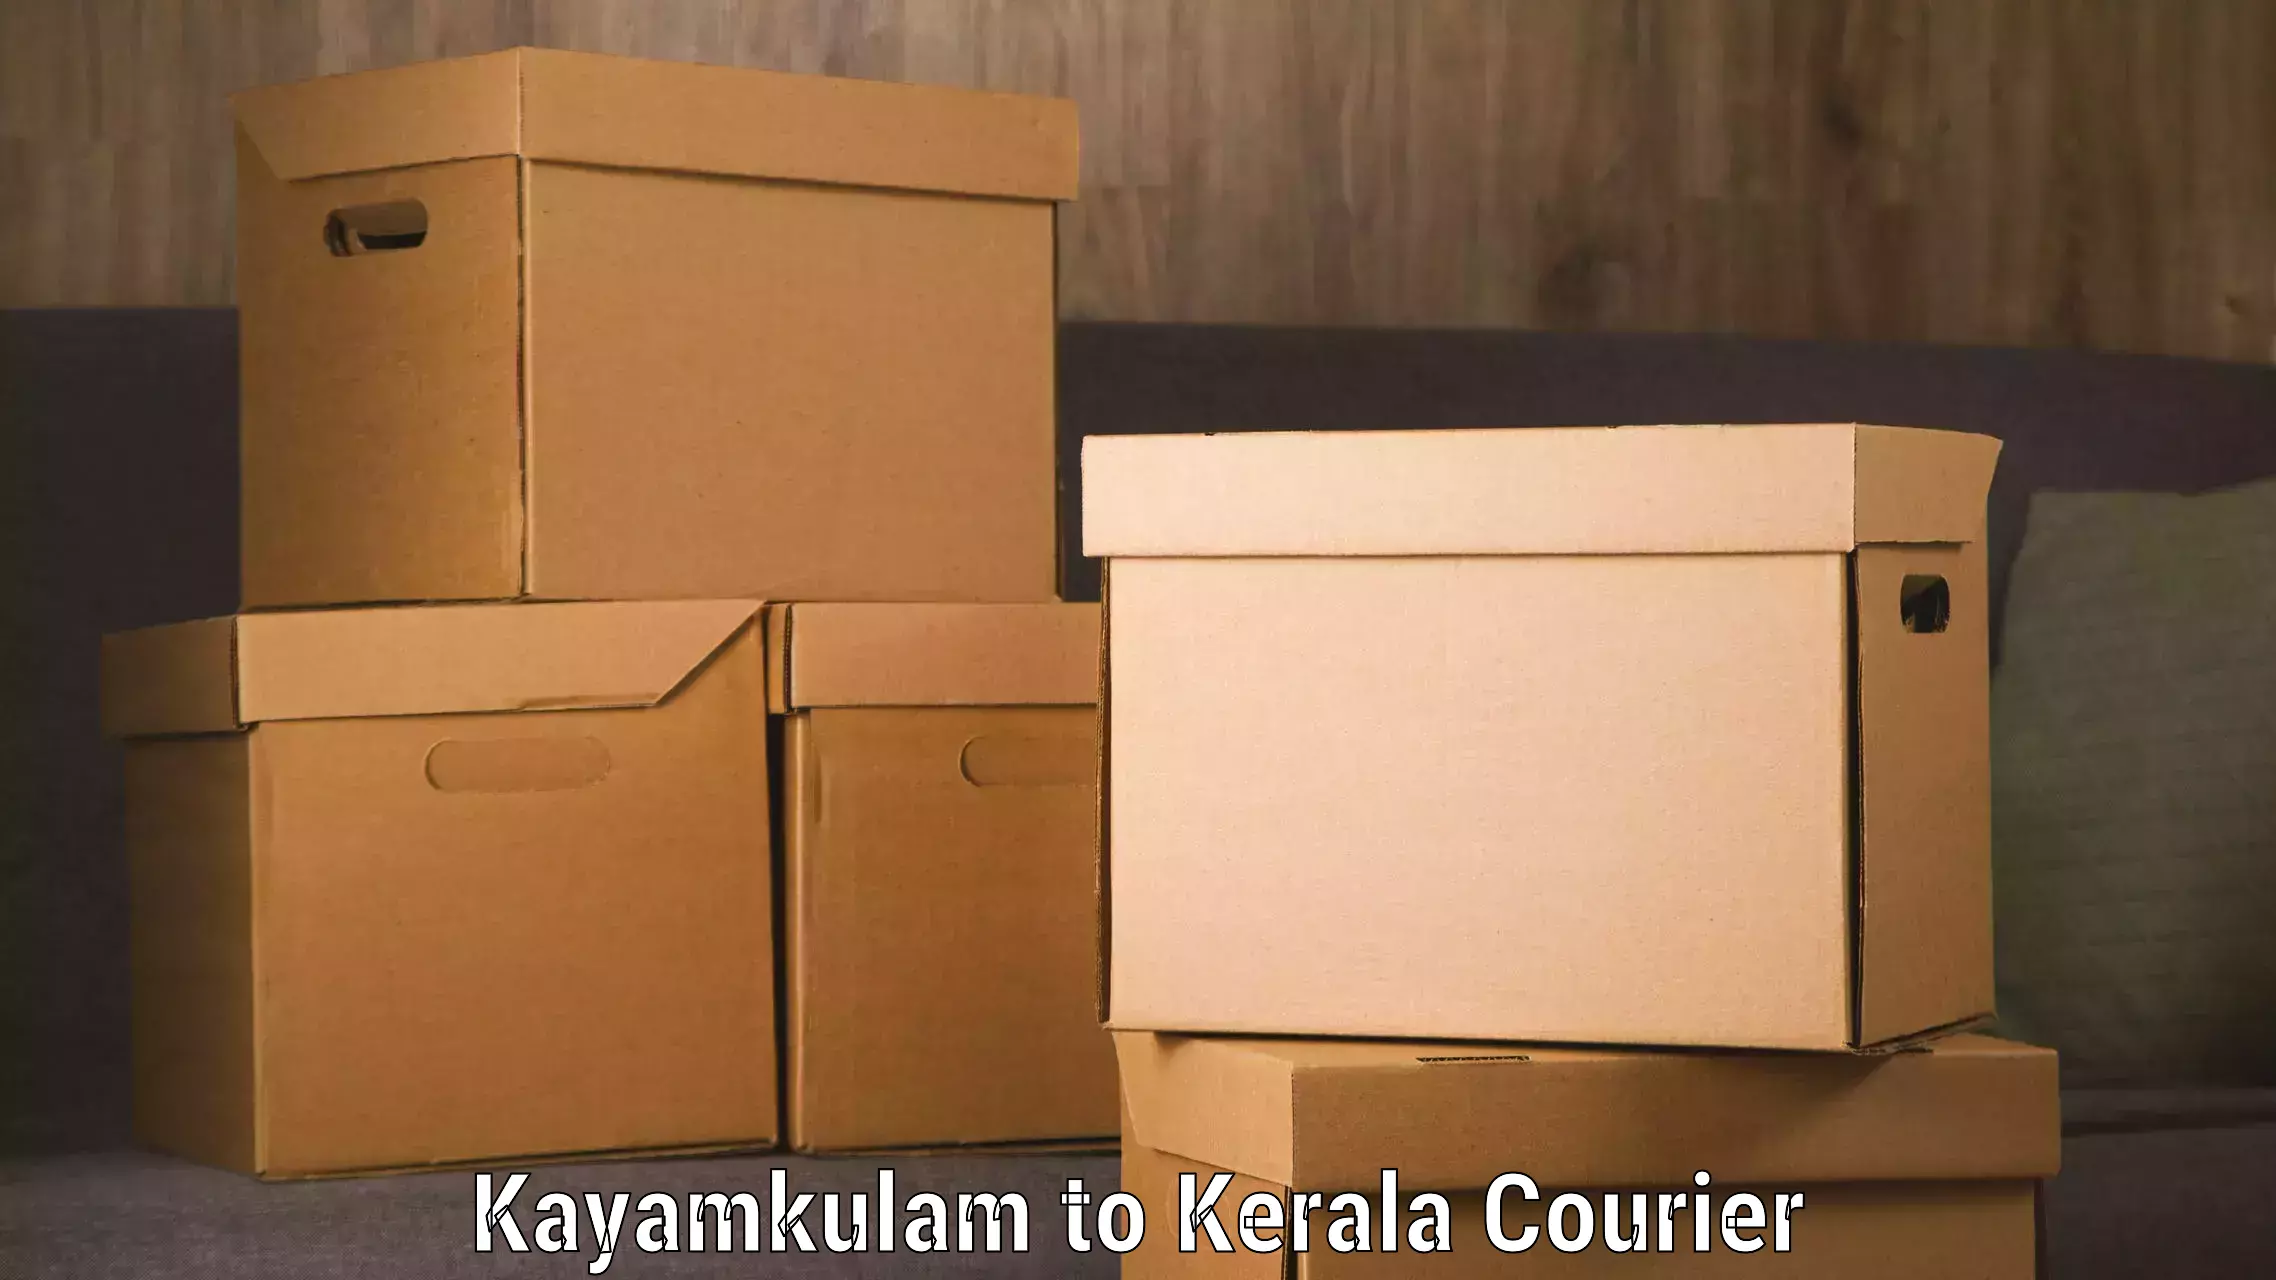 Logistics service provider Kayamkulam to Vaikom